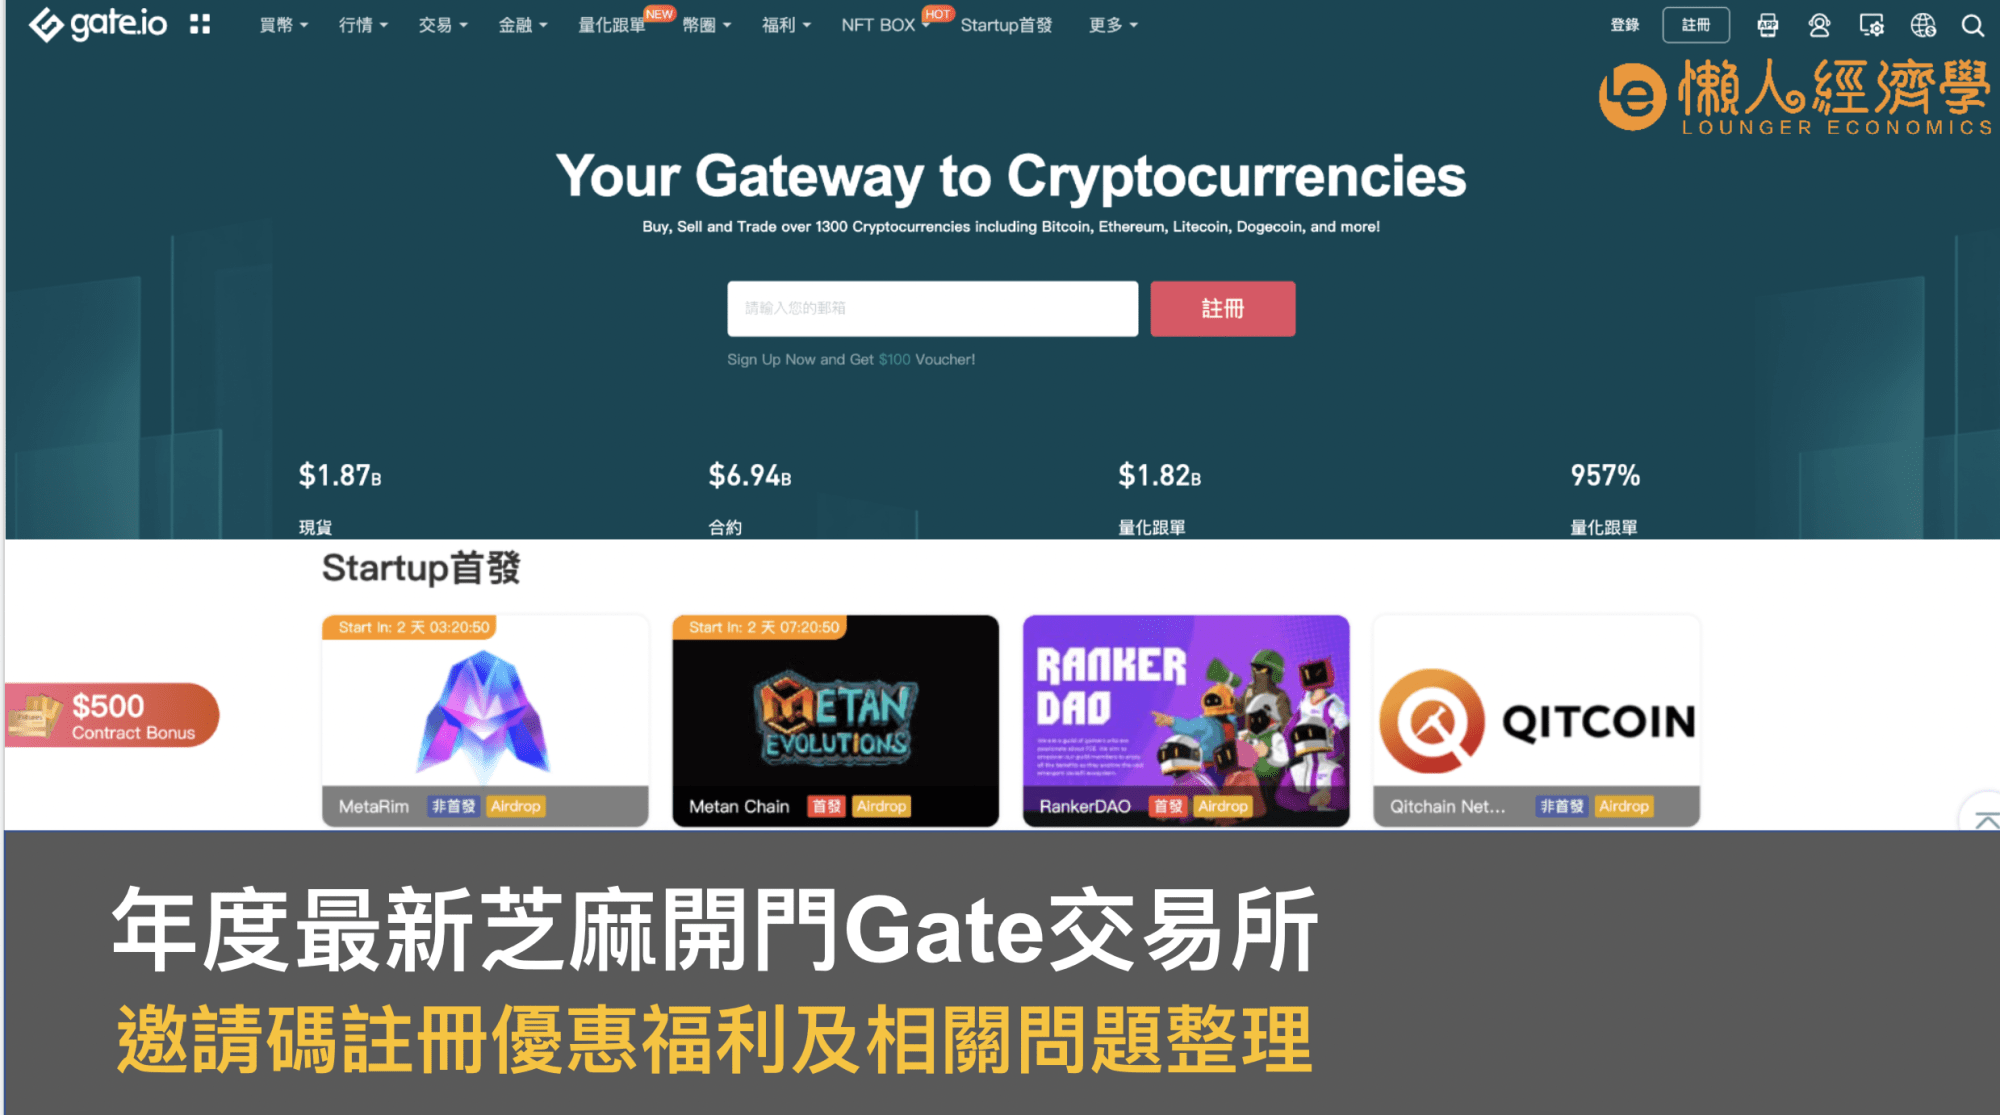 Gate.io 邀請推薦碼